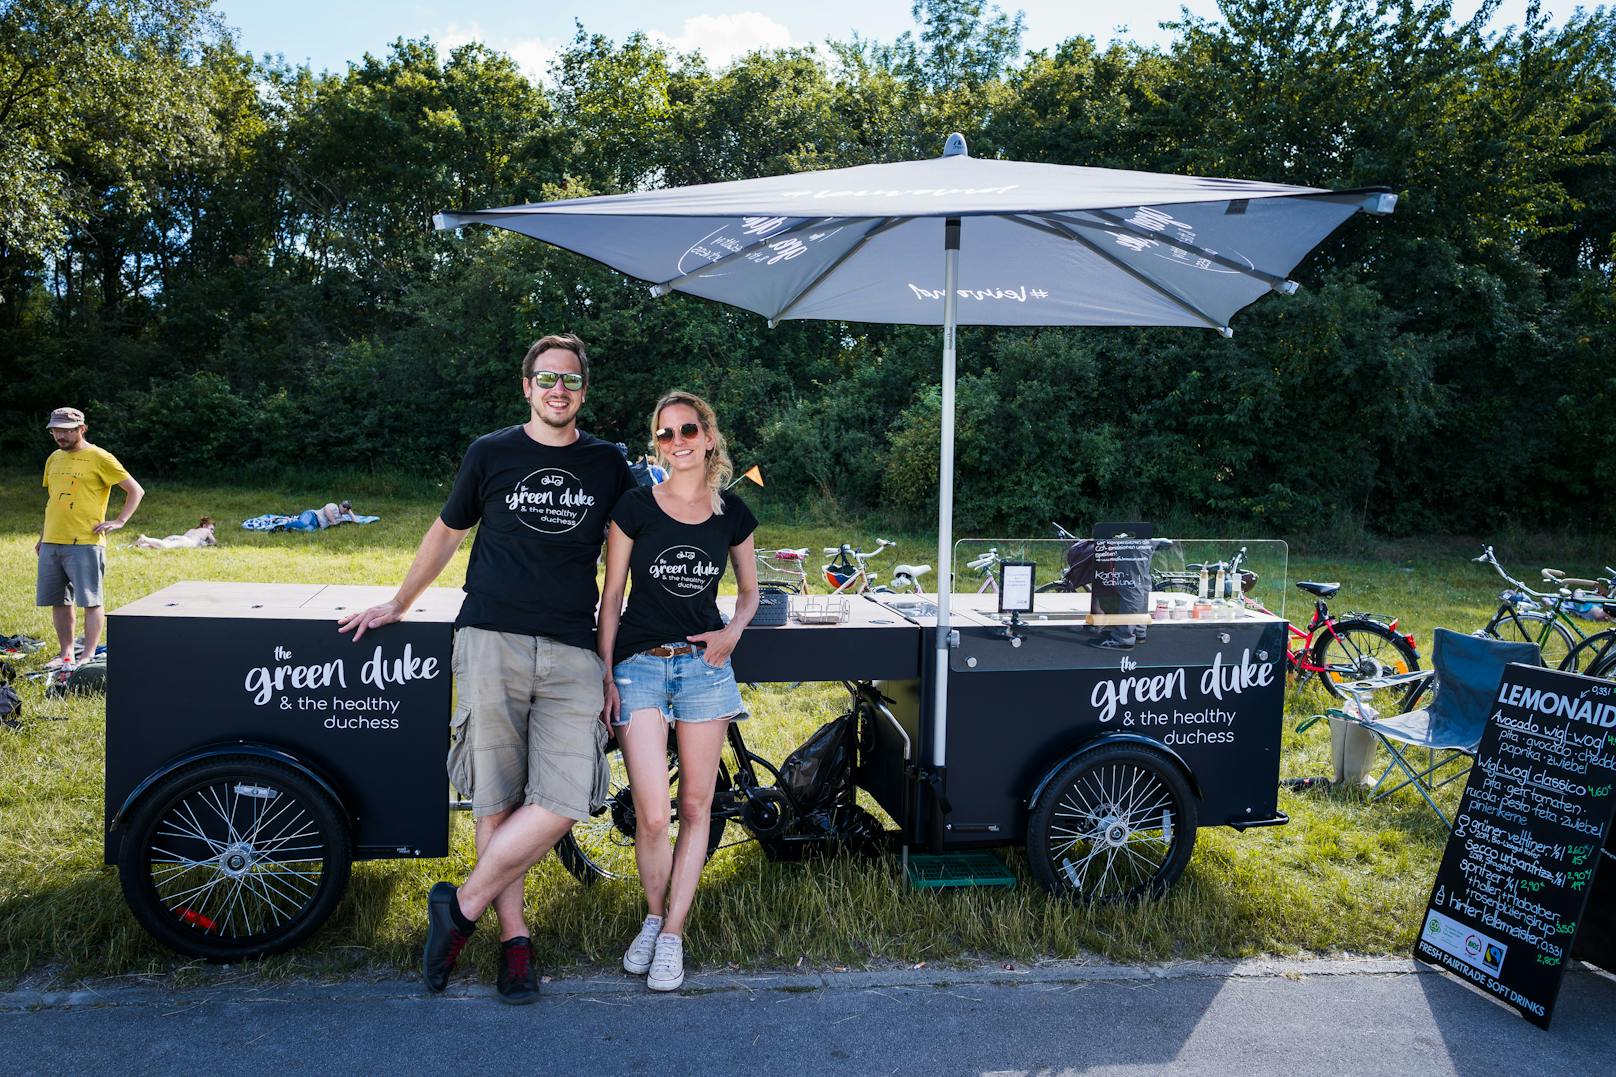 MIt ihrem Foodbike "The Green Duke&amp;the healthy Duchess" bringen Patrick (35) und Kristina (33) gesunde und CO2-neutrale Schmankerln auf die Donauinsel.